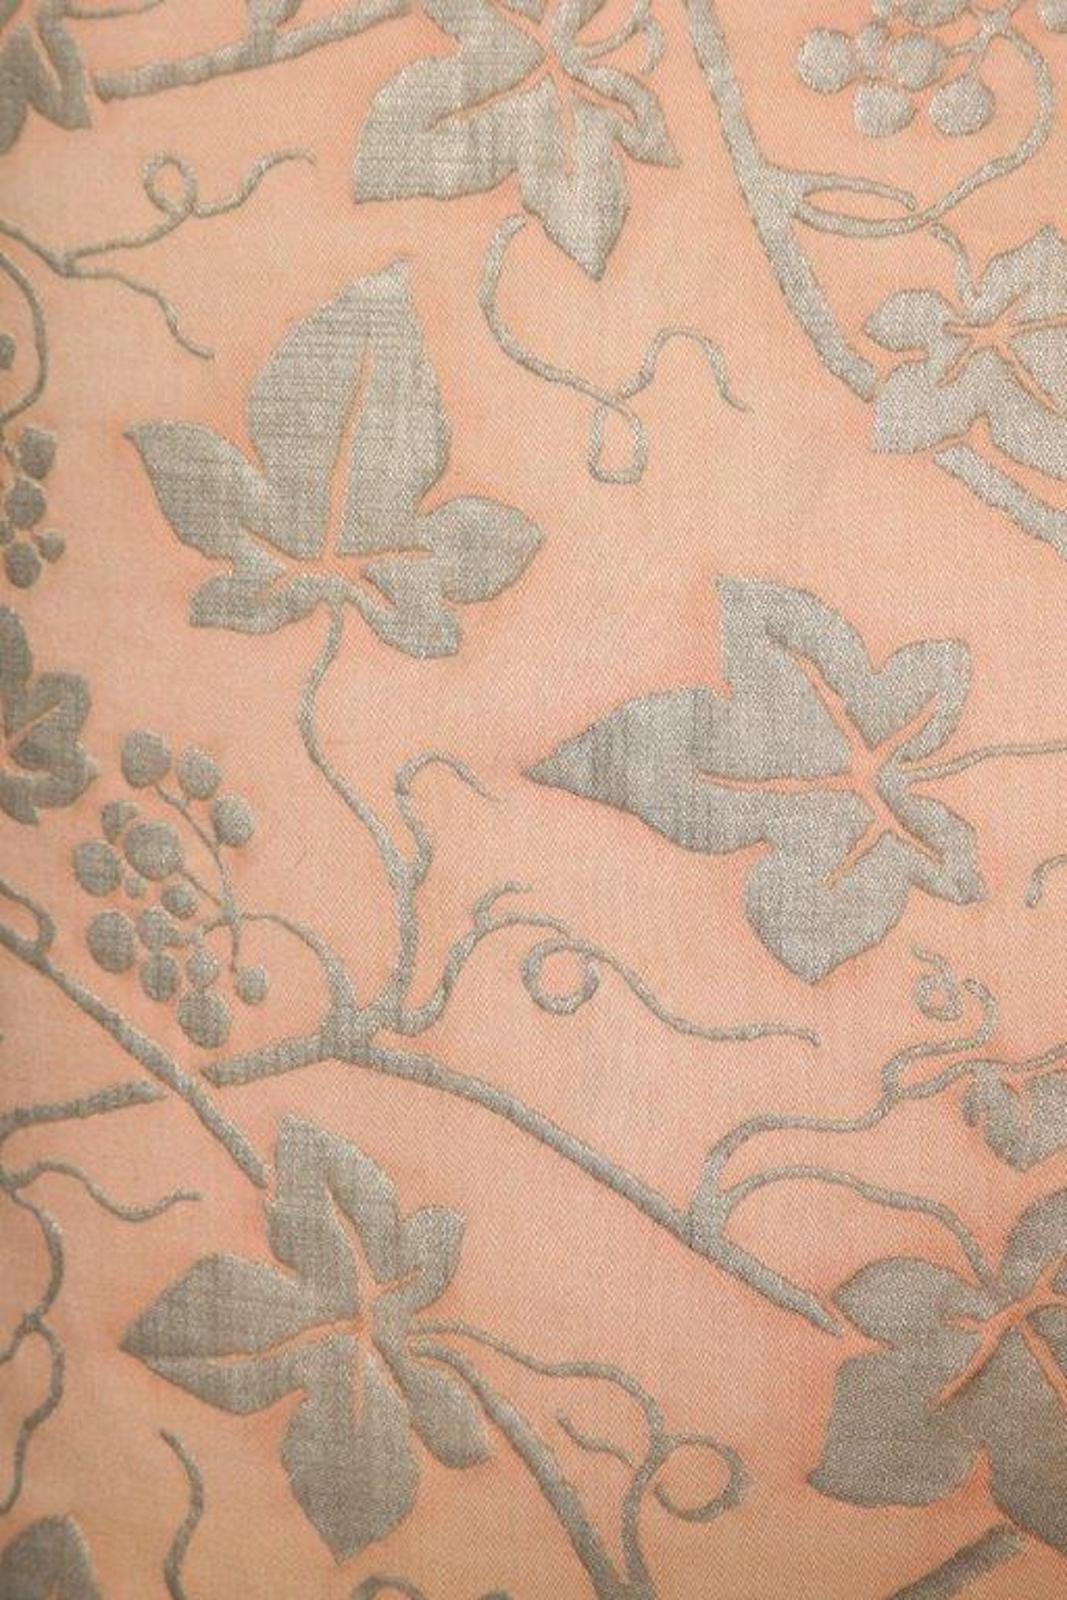 Ein Paar Fortuny-Stoffkissen im Edera-Muster, mit blassrosa und silbernem Muster. Die hübschen Kissen sind mit einer Leineneinfassung und einem silberfarbenen Leinenstreifen auf der Rückseite versehen. Das Fortuny-Muster ist ein spanisches Design